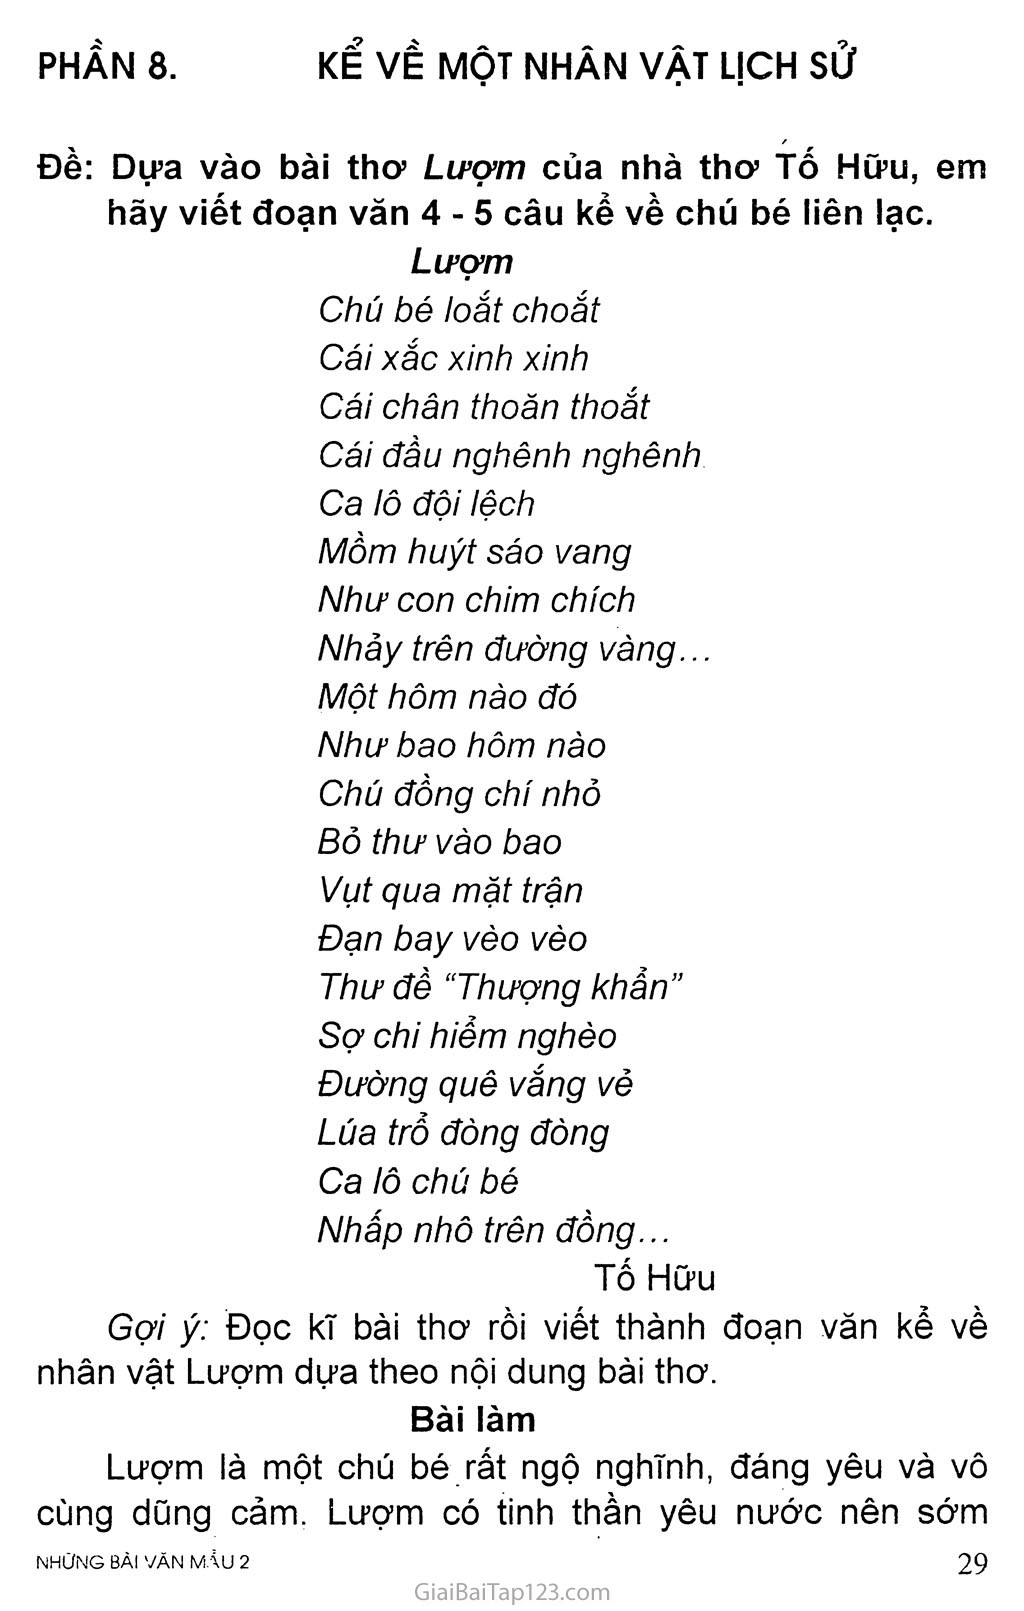 Đề: Dựa vào bài thơ Lượm của nhà thơ Tố Hữu, em hãy viết đoạn văn 4 - 5 câu kể về chú bé liên lạc trang 1